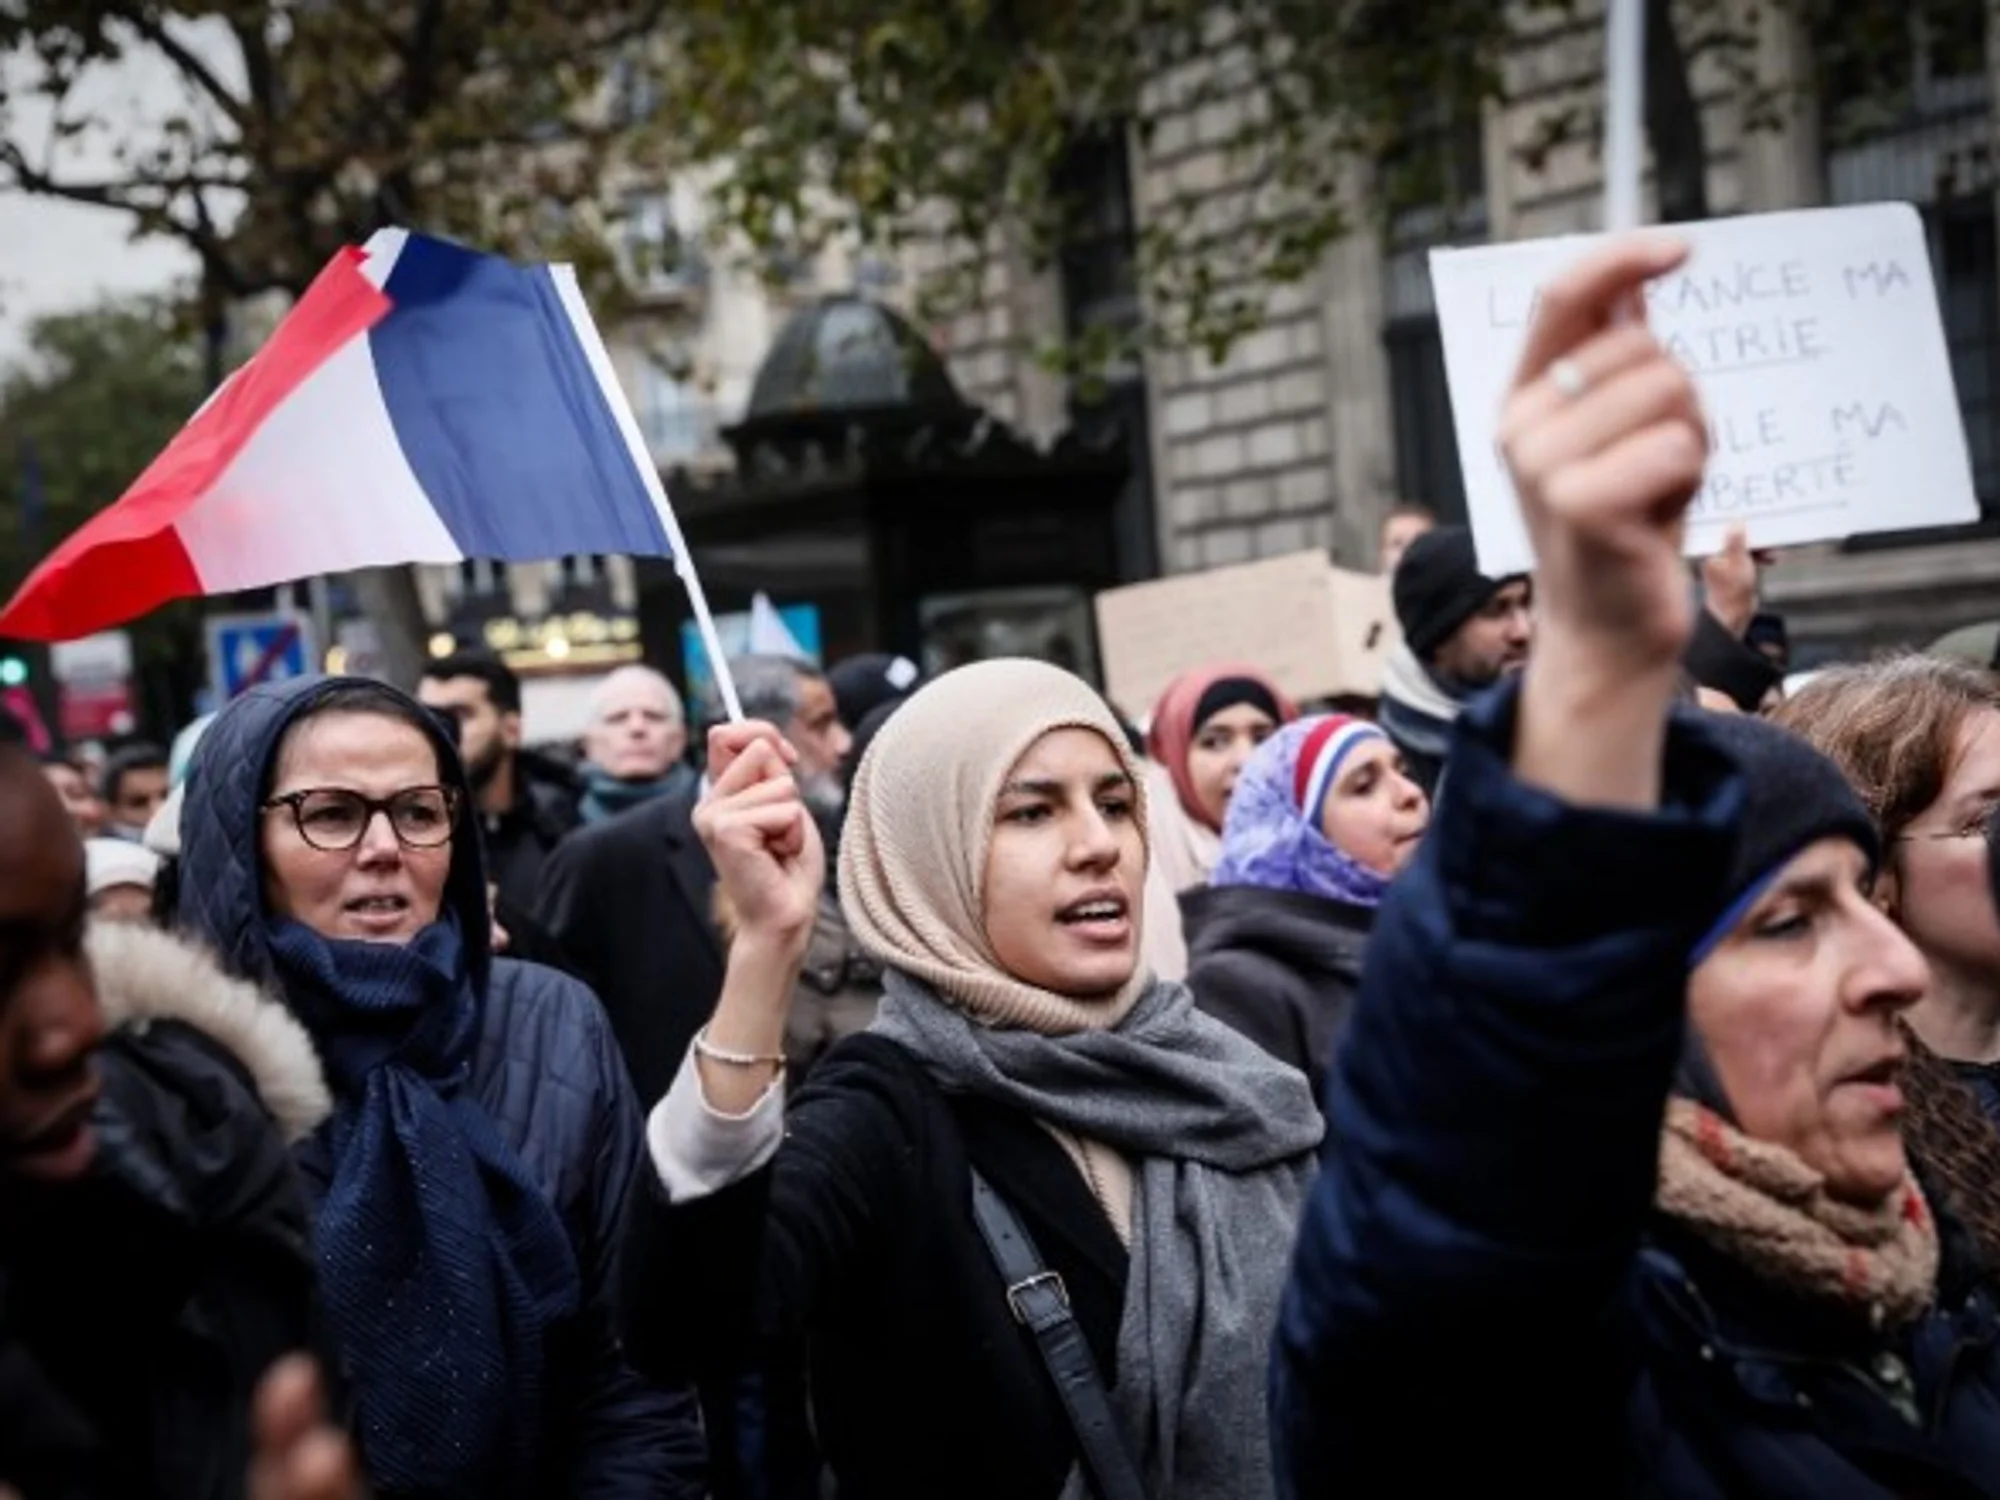 Lire la suite à propos de l’article Les lois sur le cannabis en France ont affecté les musulmans de manière disproportionnée